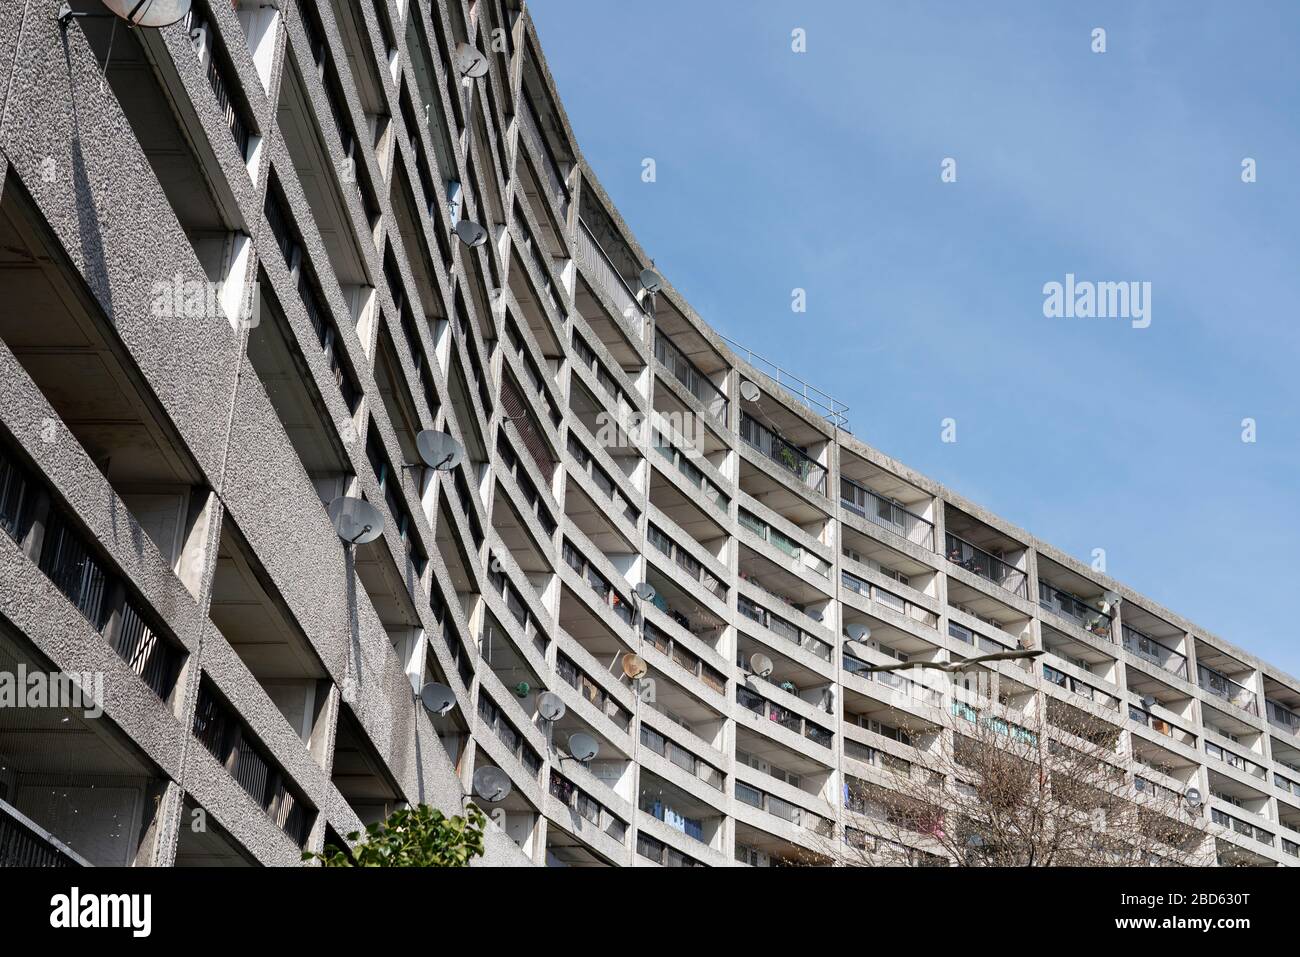 Vista esterna del complesso di appartamenti Cables Wynd House, conosciuto come Banana Flats, a Leith, Scozia, Regno Unito Foto Stock